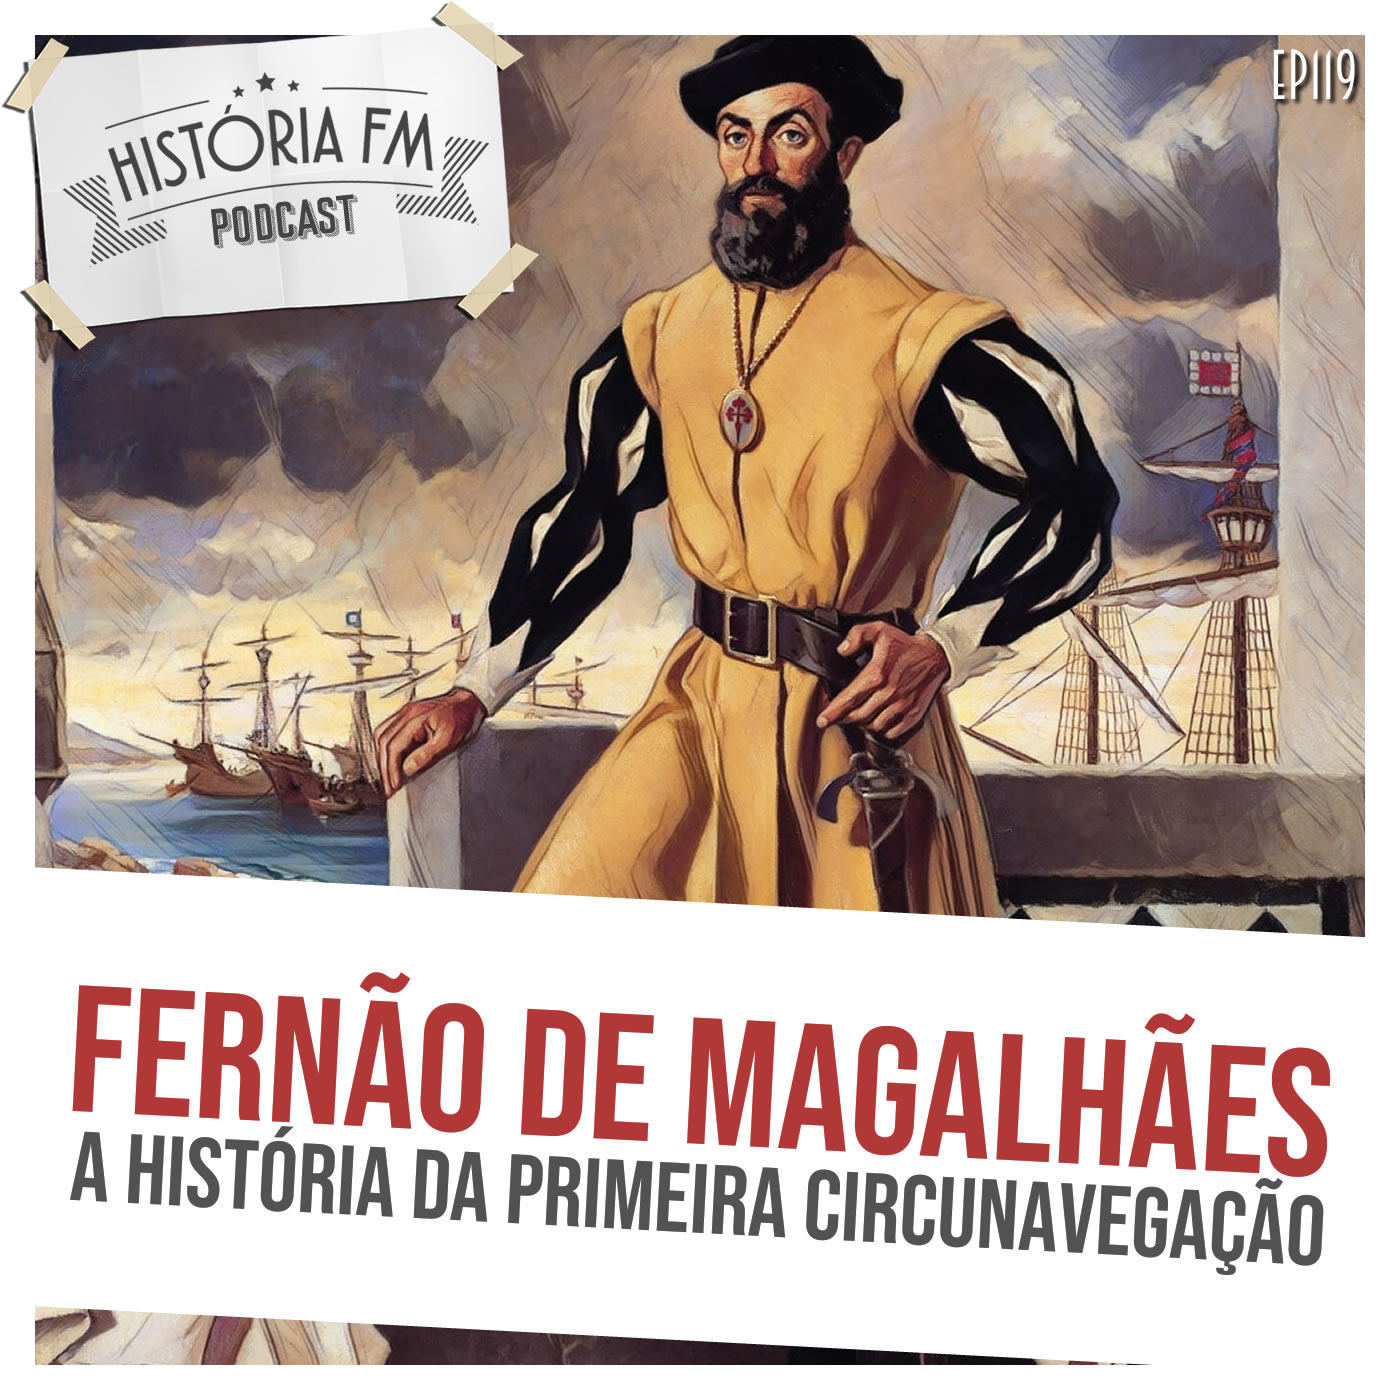 Fernão de Magalhães: a história da primeira circunavegação